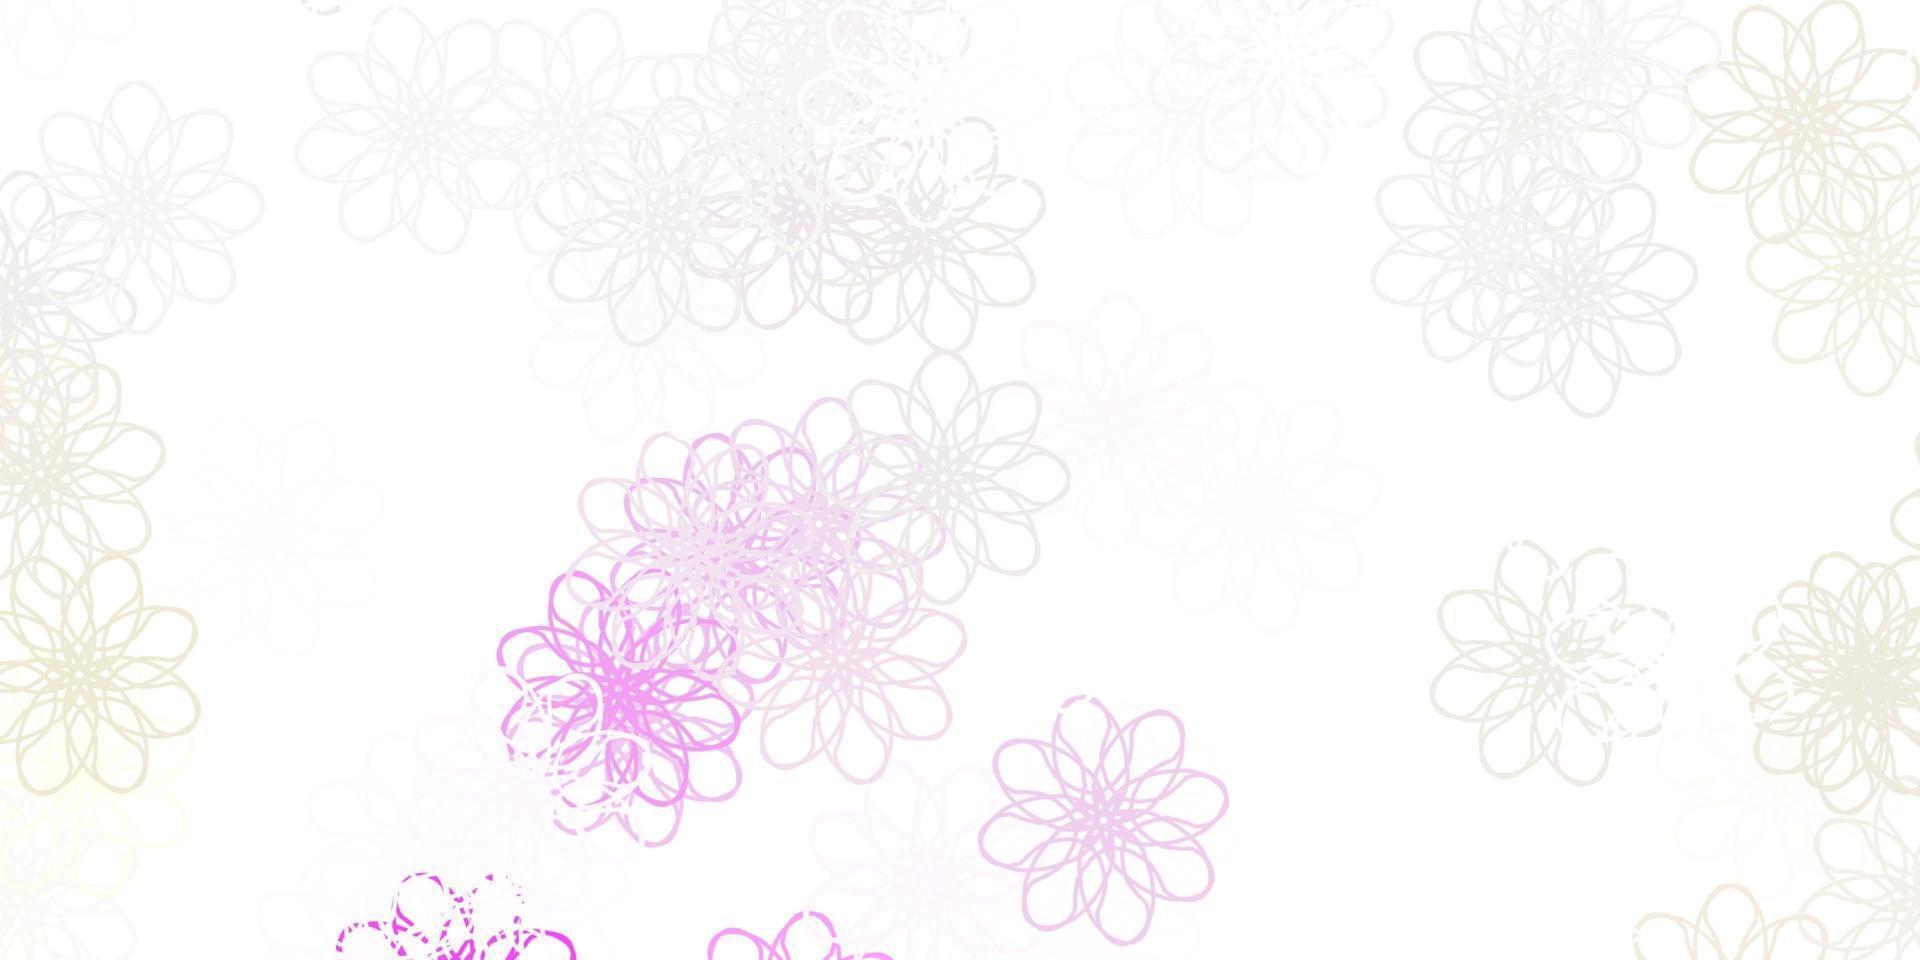 ljusrosa, gula vektor doodle mönster med blommor.